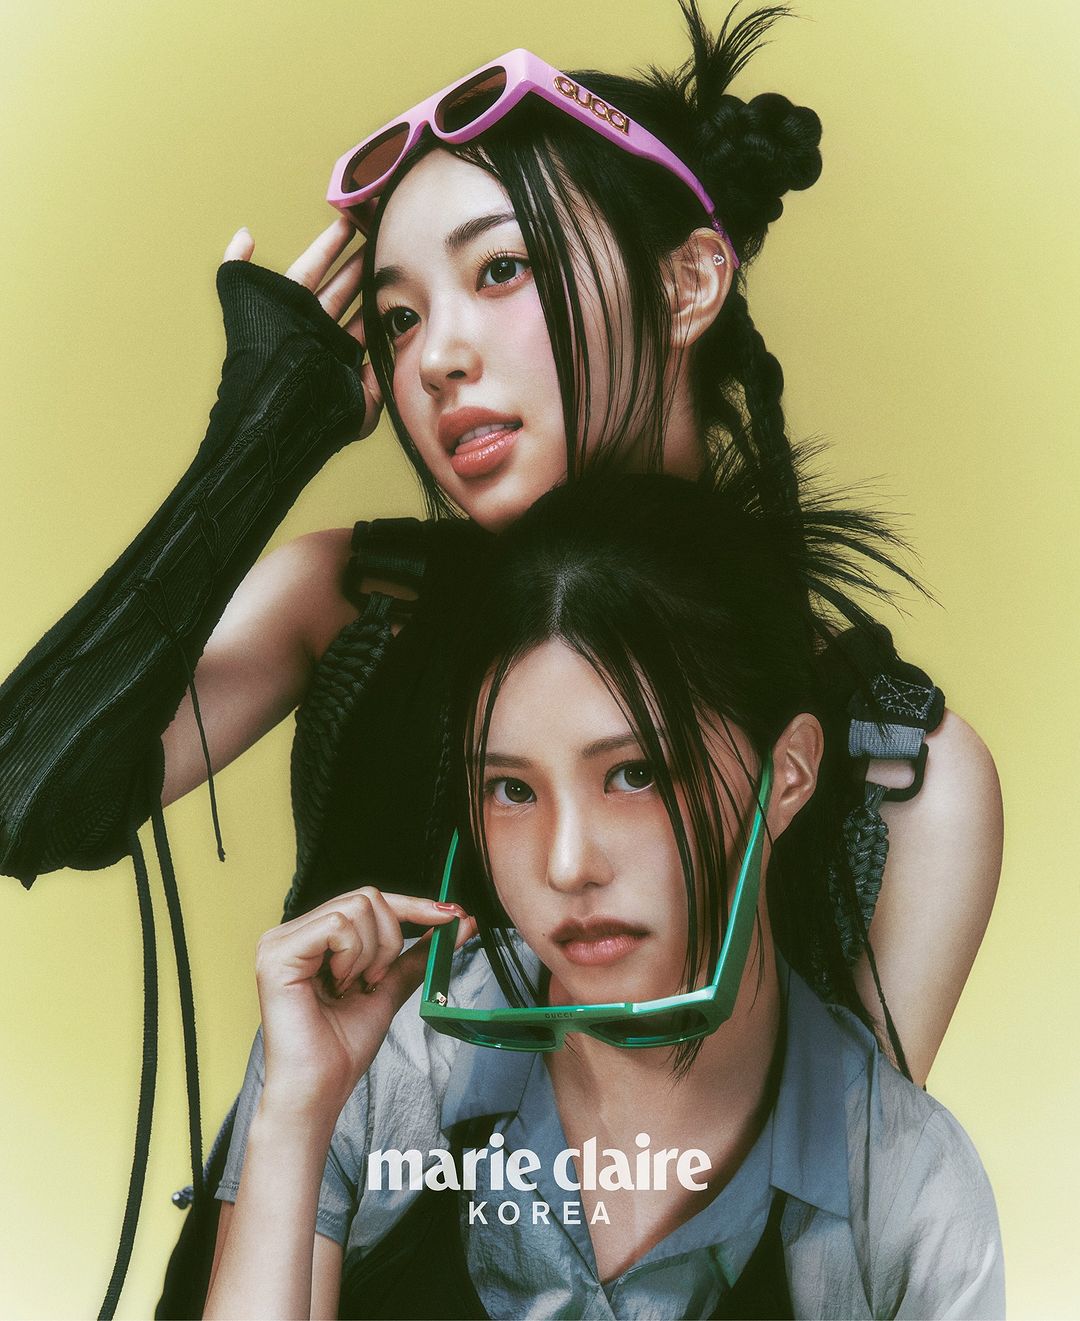 Группа Candy Shop представила дебютную фотосессию для Marie Claire